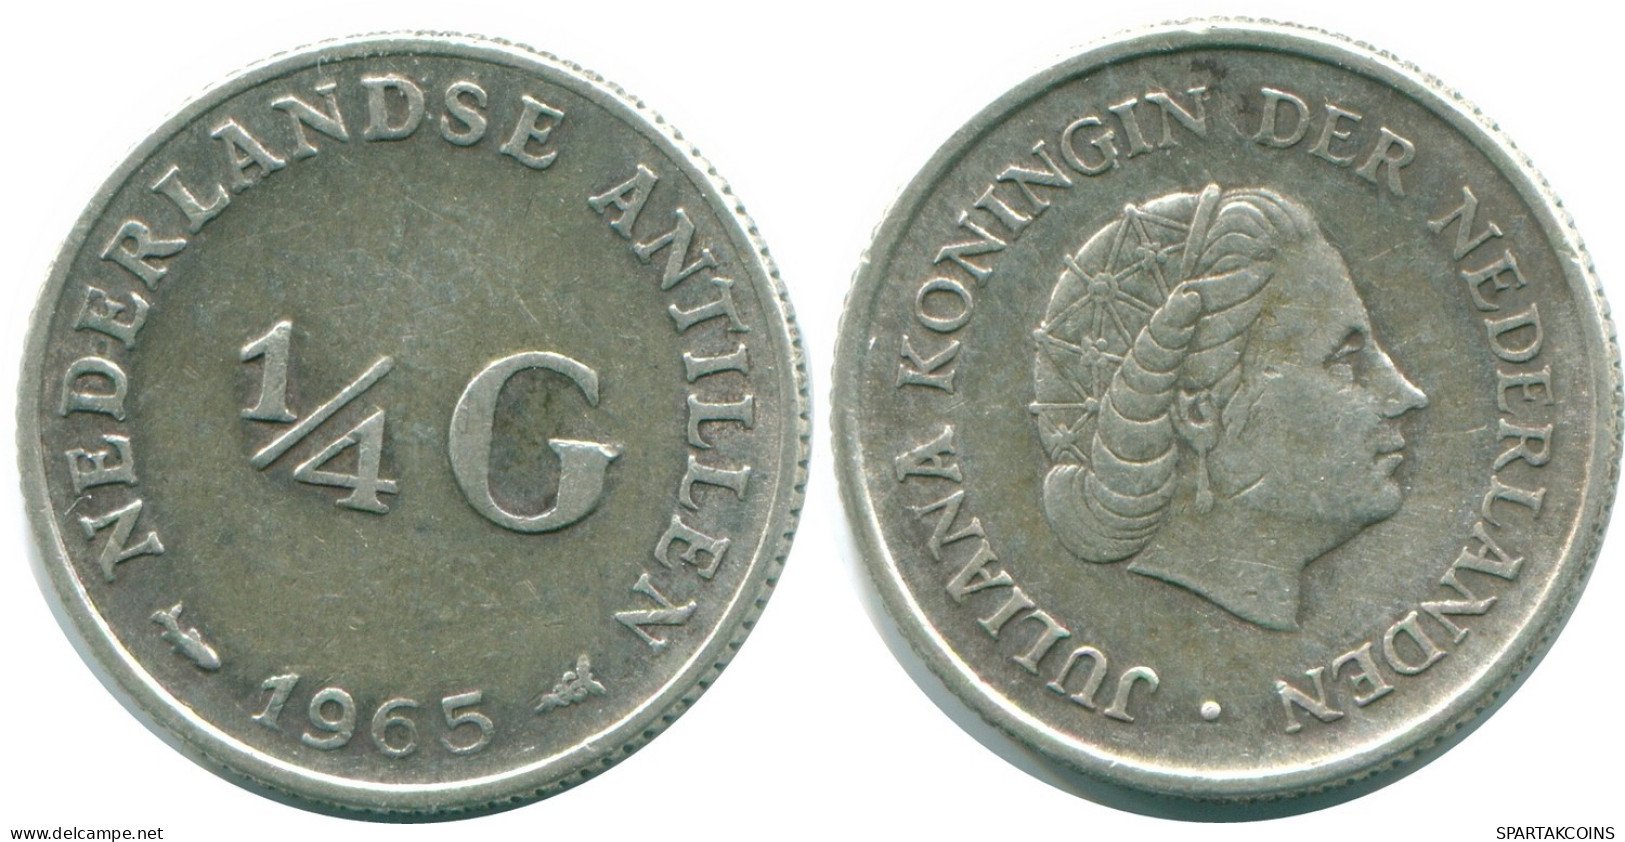 1/4 GULDEN 1965 NIEDERLÄNDISCHE ANTILLEN SILBER Koloniale Münze #NL11398.4.D.A - Antille Olandesi